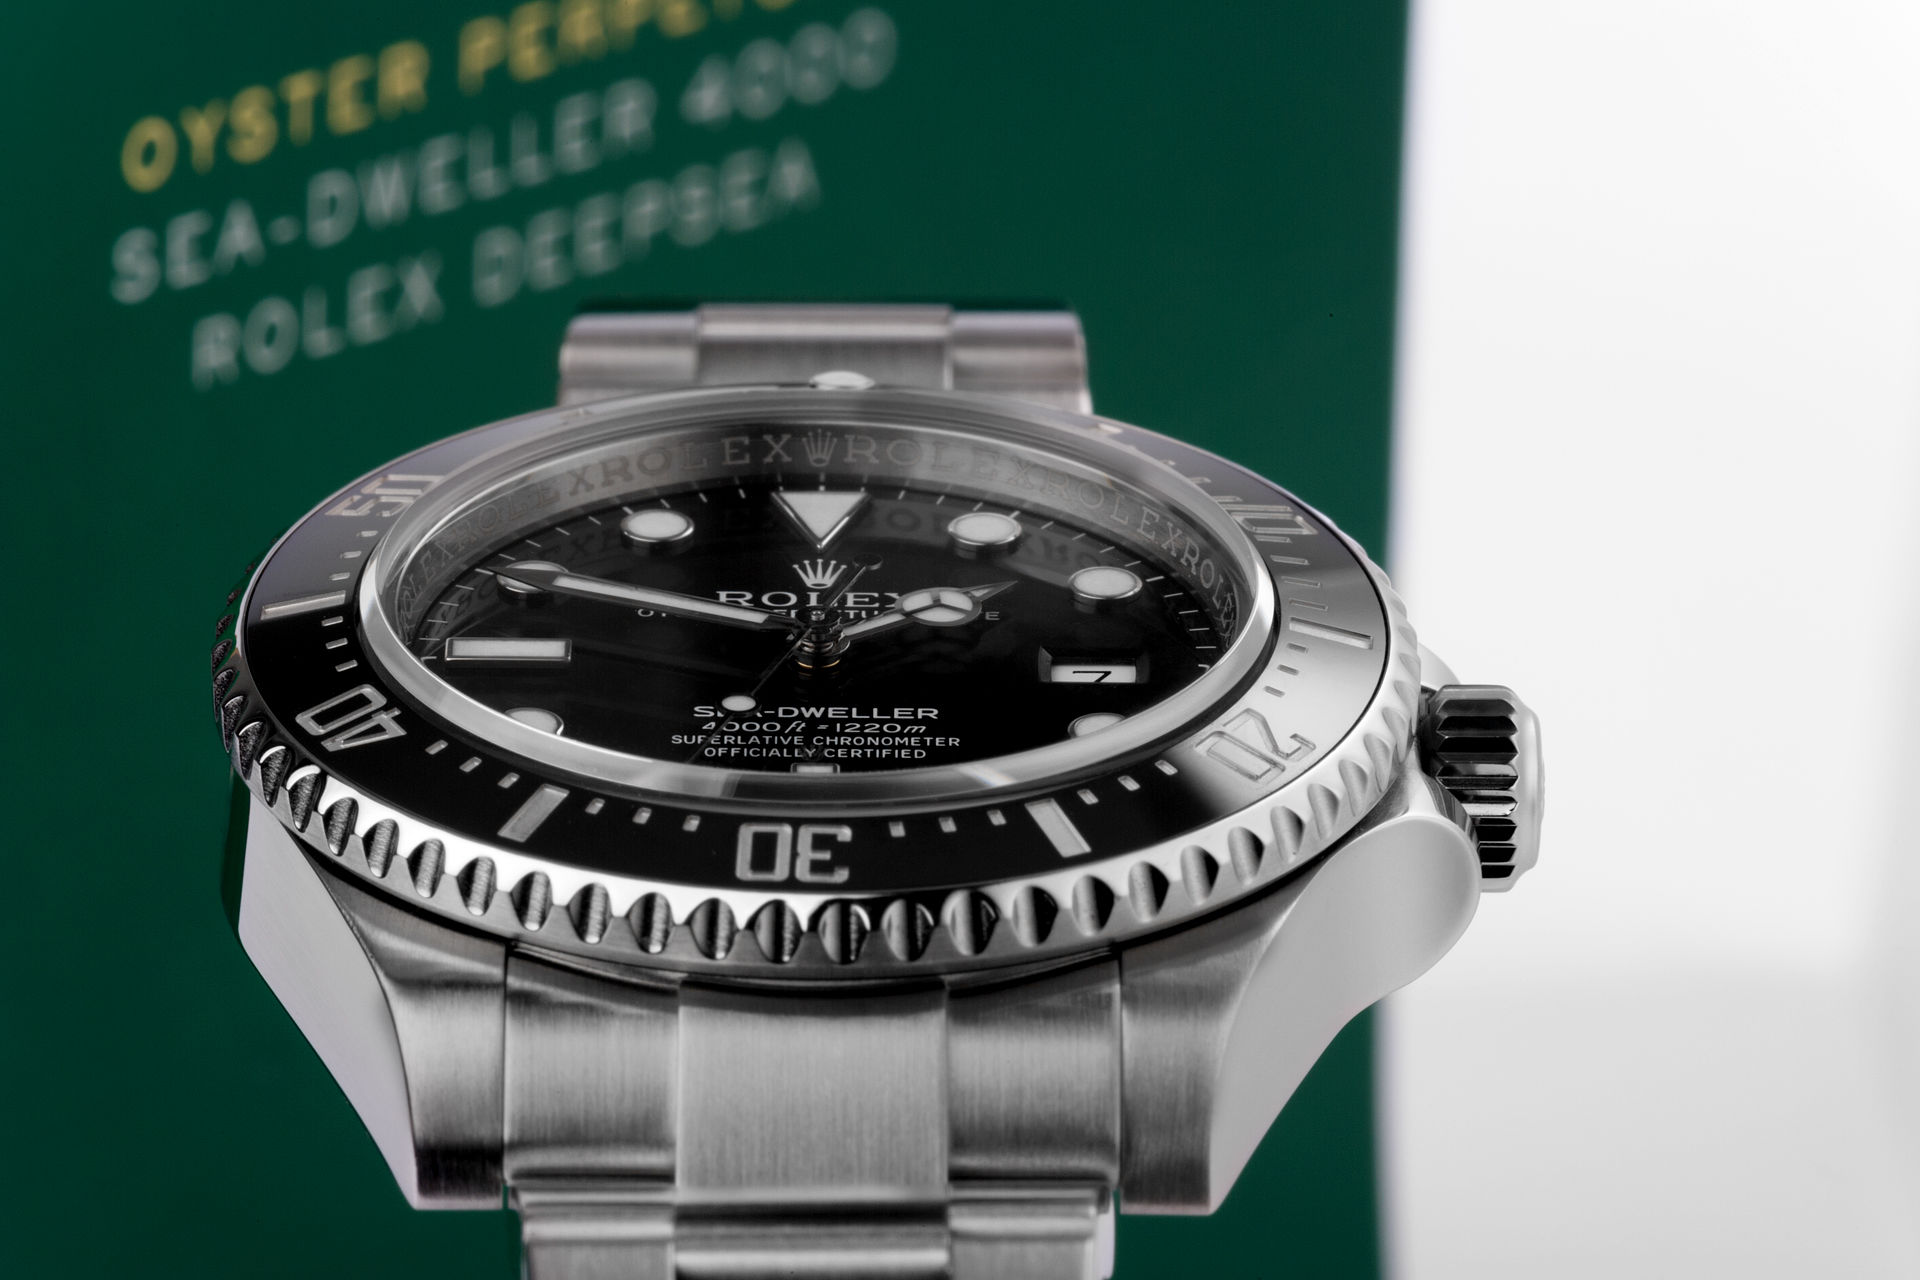 ref 116600 | Box & Certificate | Rolex Sea-Dweller 4000